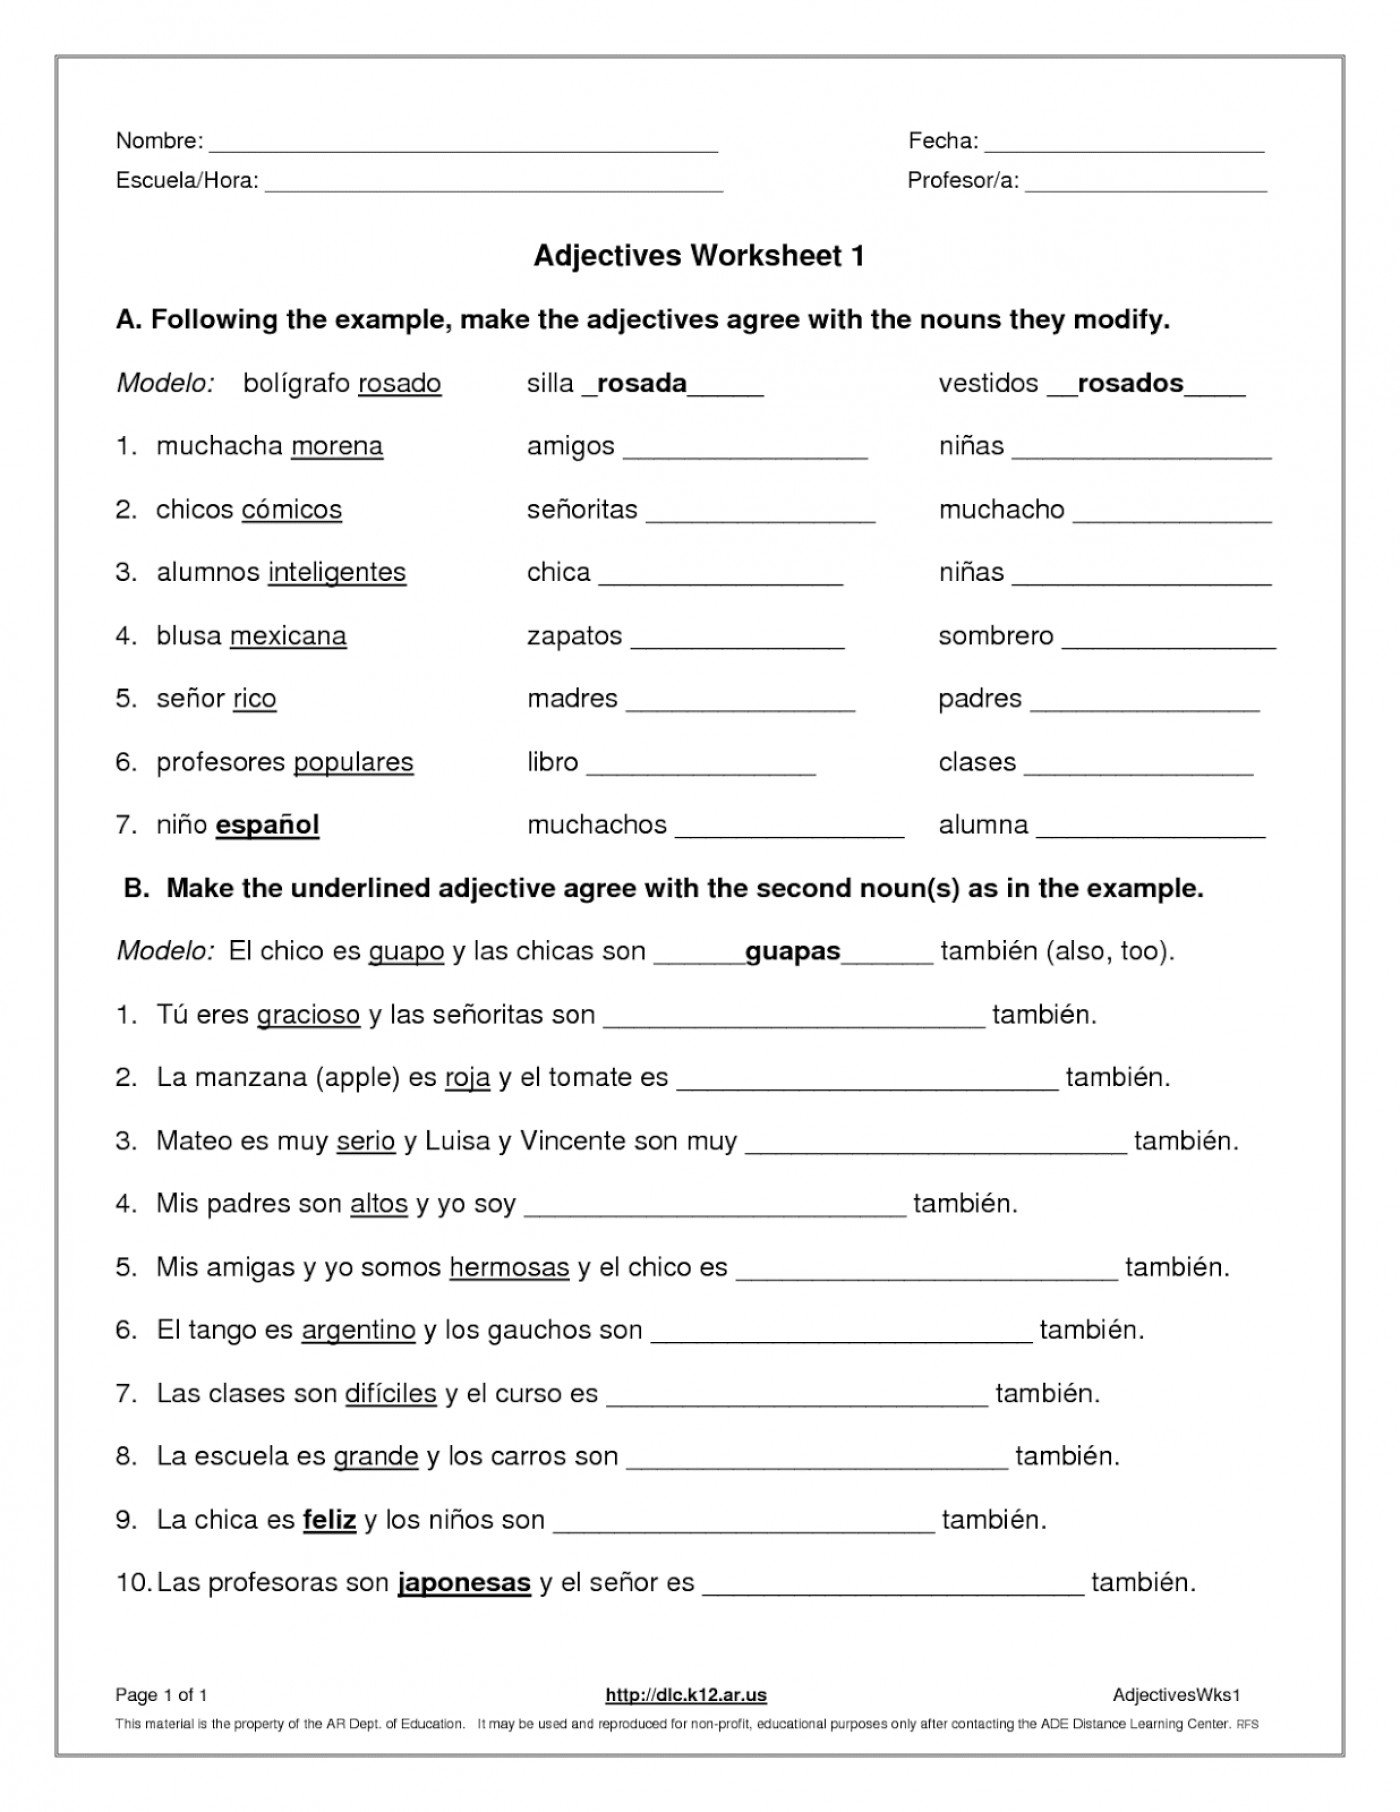 Agreement Of Adjectives Agreement Of Adjectives Spanish Worksheet Inside Agreement Of Adjectives Spanish Worksheet Answers Hayes School